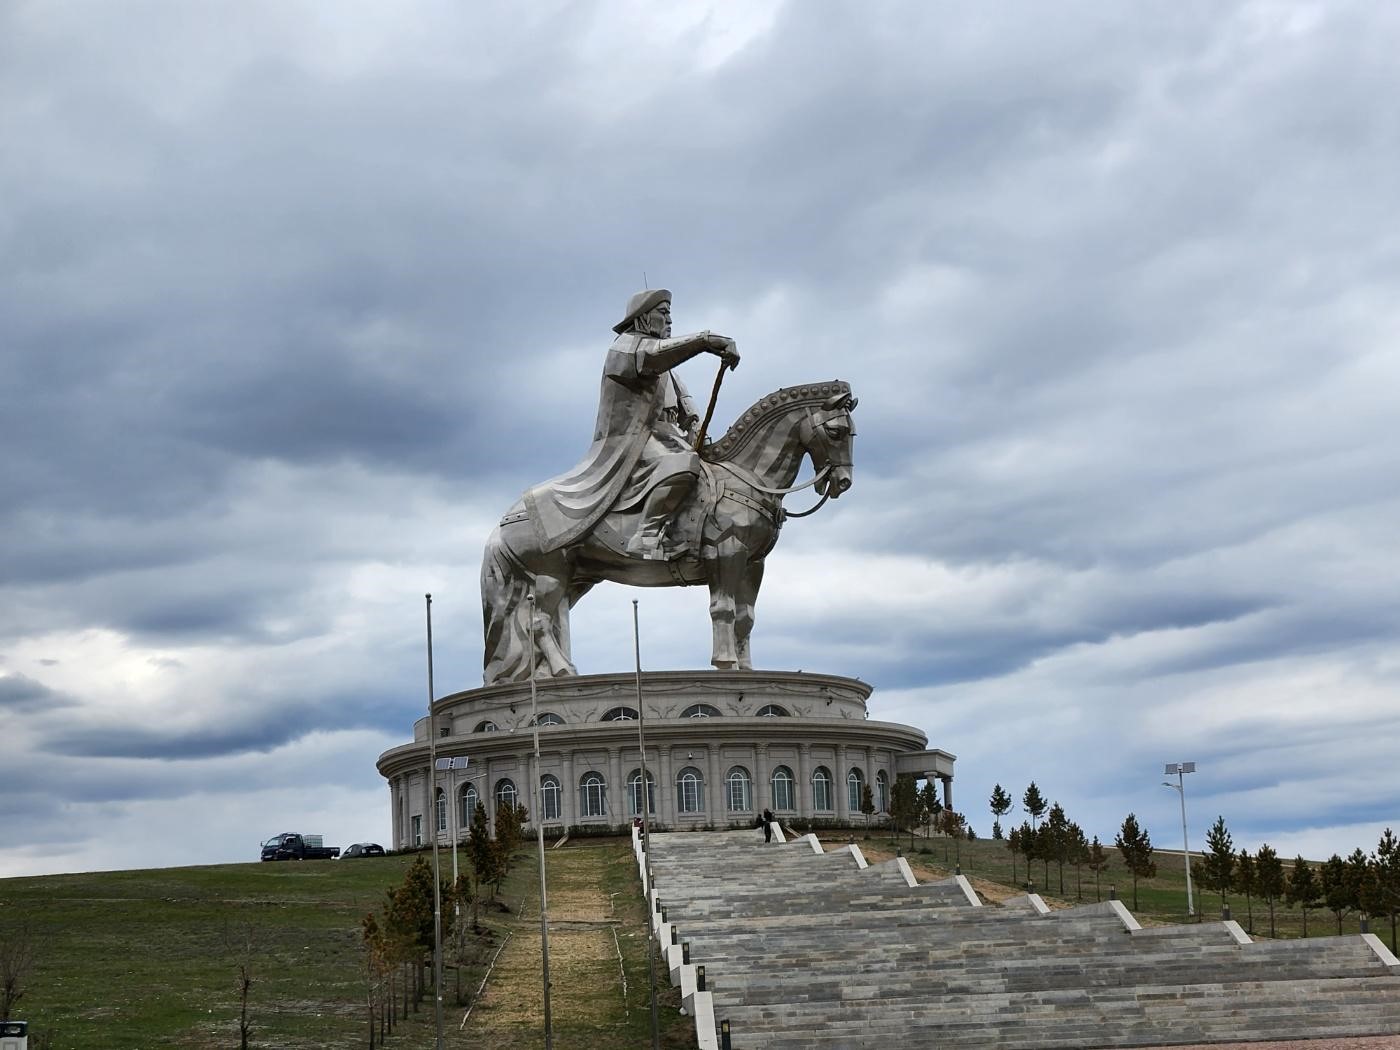 징기스칸 기마상은 몽골 울란바토르 시내에서 동쪽으로 50여km 떨어진 천진벌덕(Tsonjin Boldog)에 있다. 기마상은 1206년 몽골을 통일한 것을 기념해 800년이 지난 2006년에 건립을 시작해 2010년에 완공됐다.